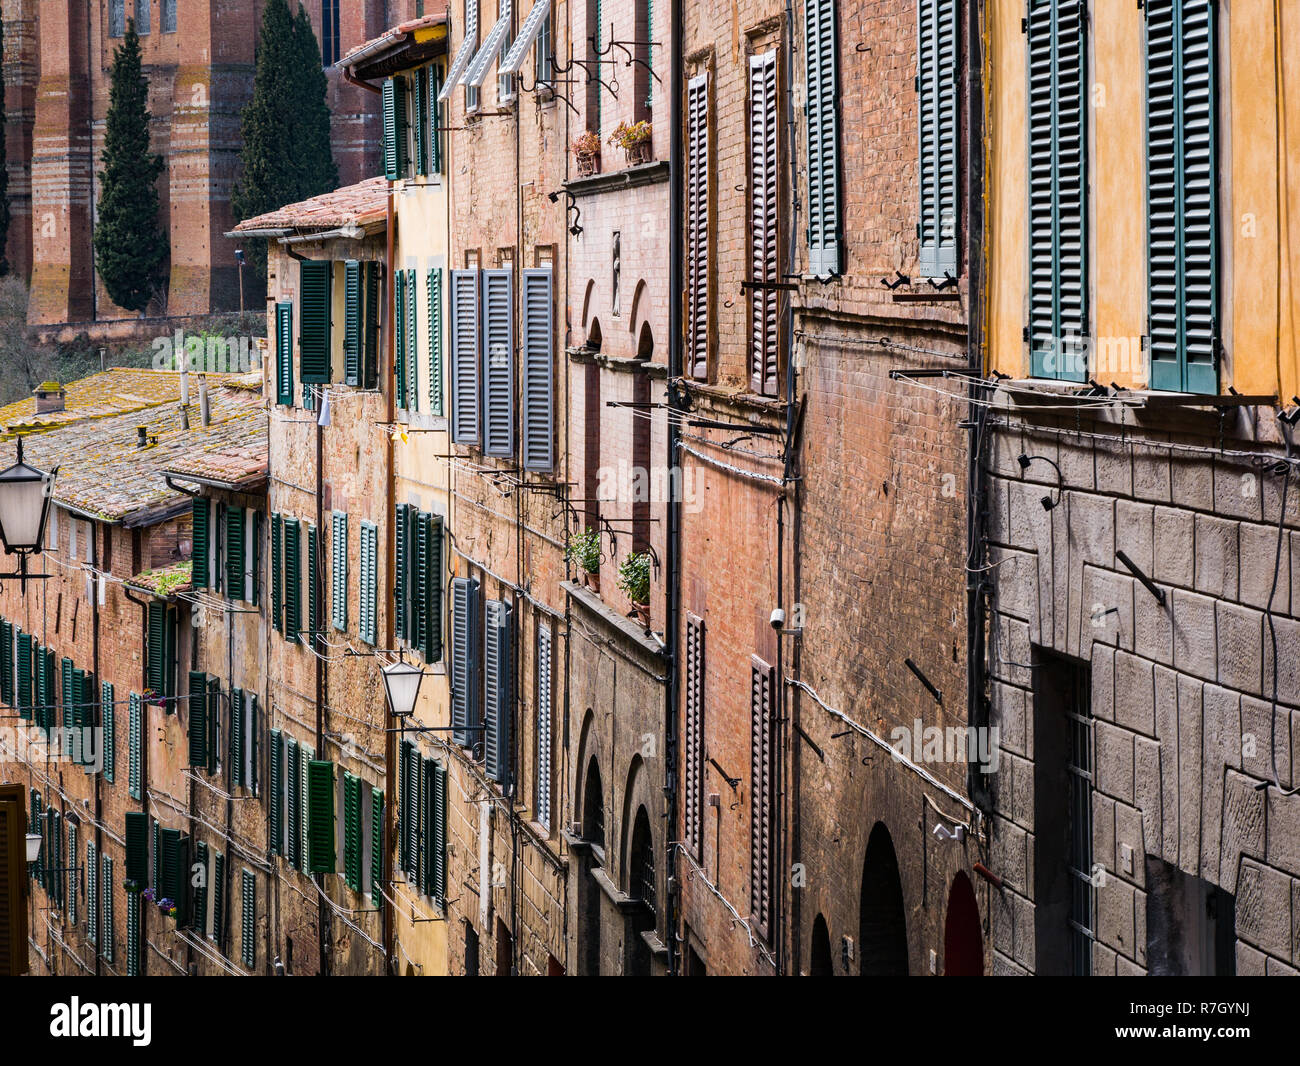 Mediterrane Fassade mit Fenstern in erdigen und rötliche Farben, Siena,  Toskana, Italien Stockfotografie - Alamy